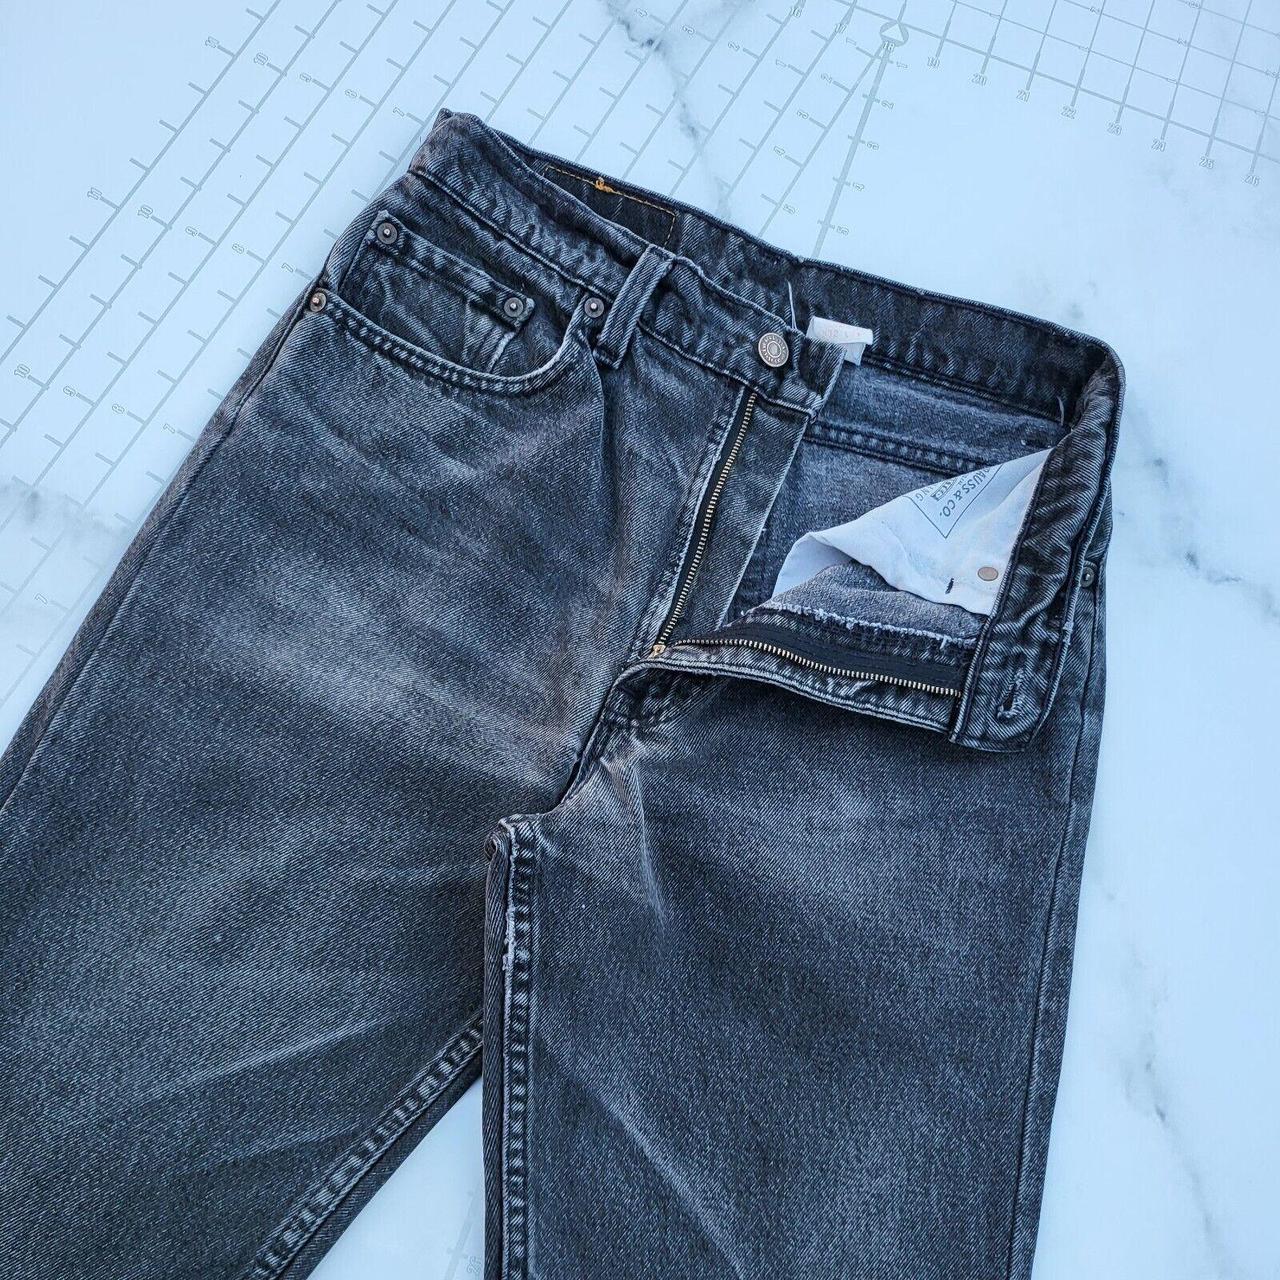 Vintage Levi's Jeans 32x34 Made in USA Black 550... - Depop